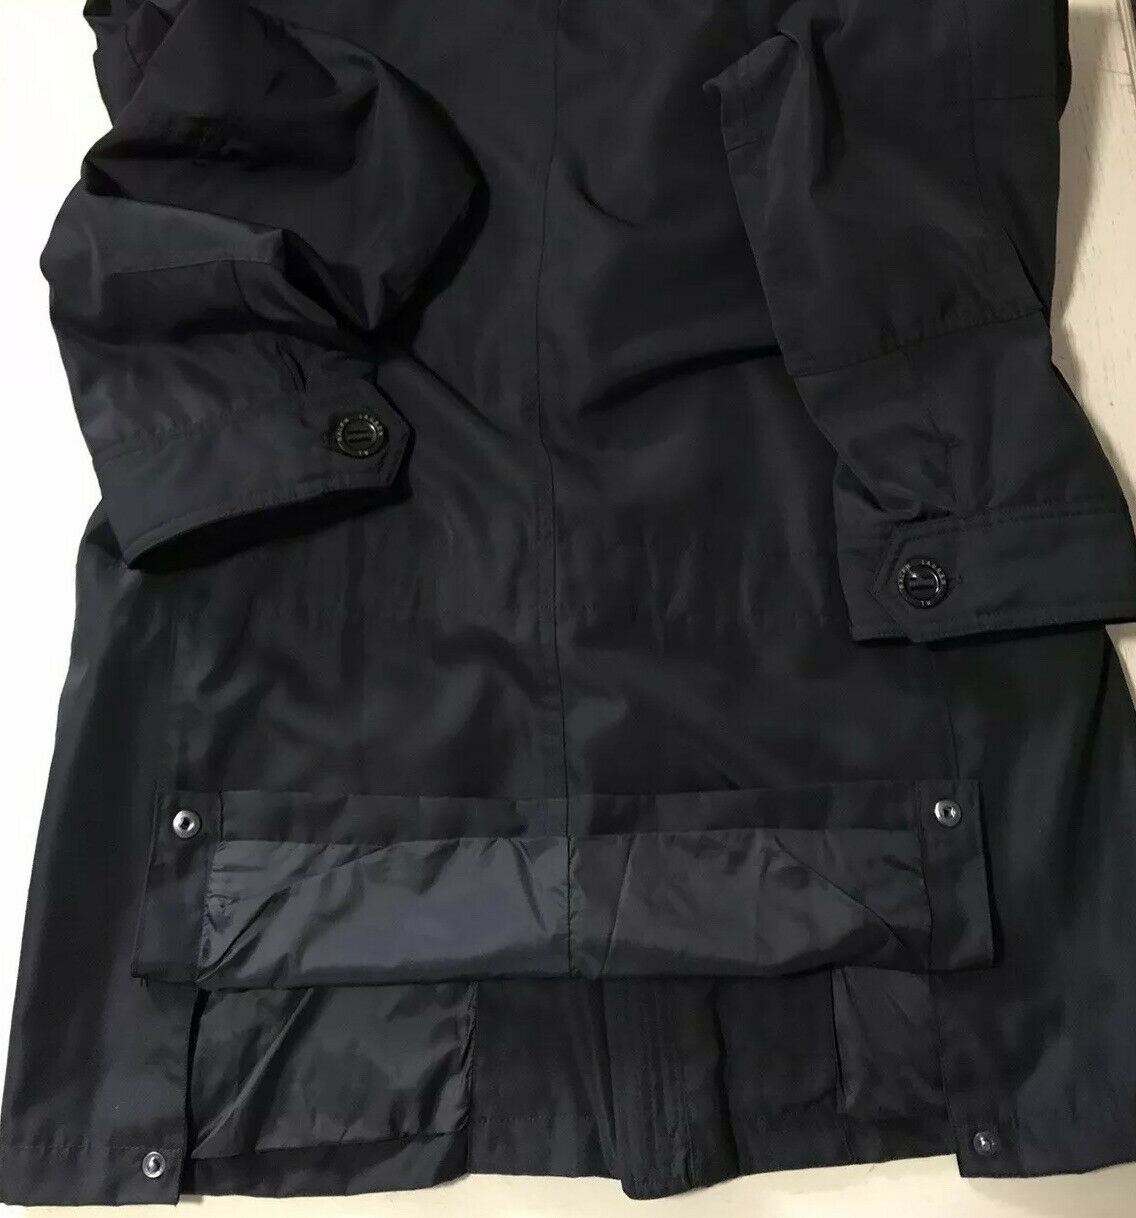 Новое мужское пальто Ralph Lauren Purple Label (RLX), черное, размер L